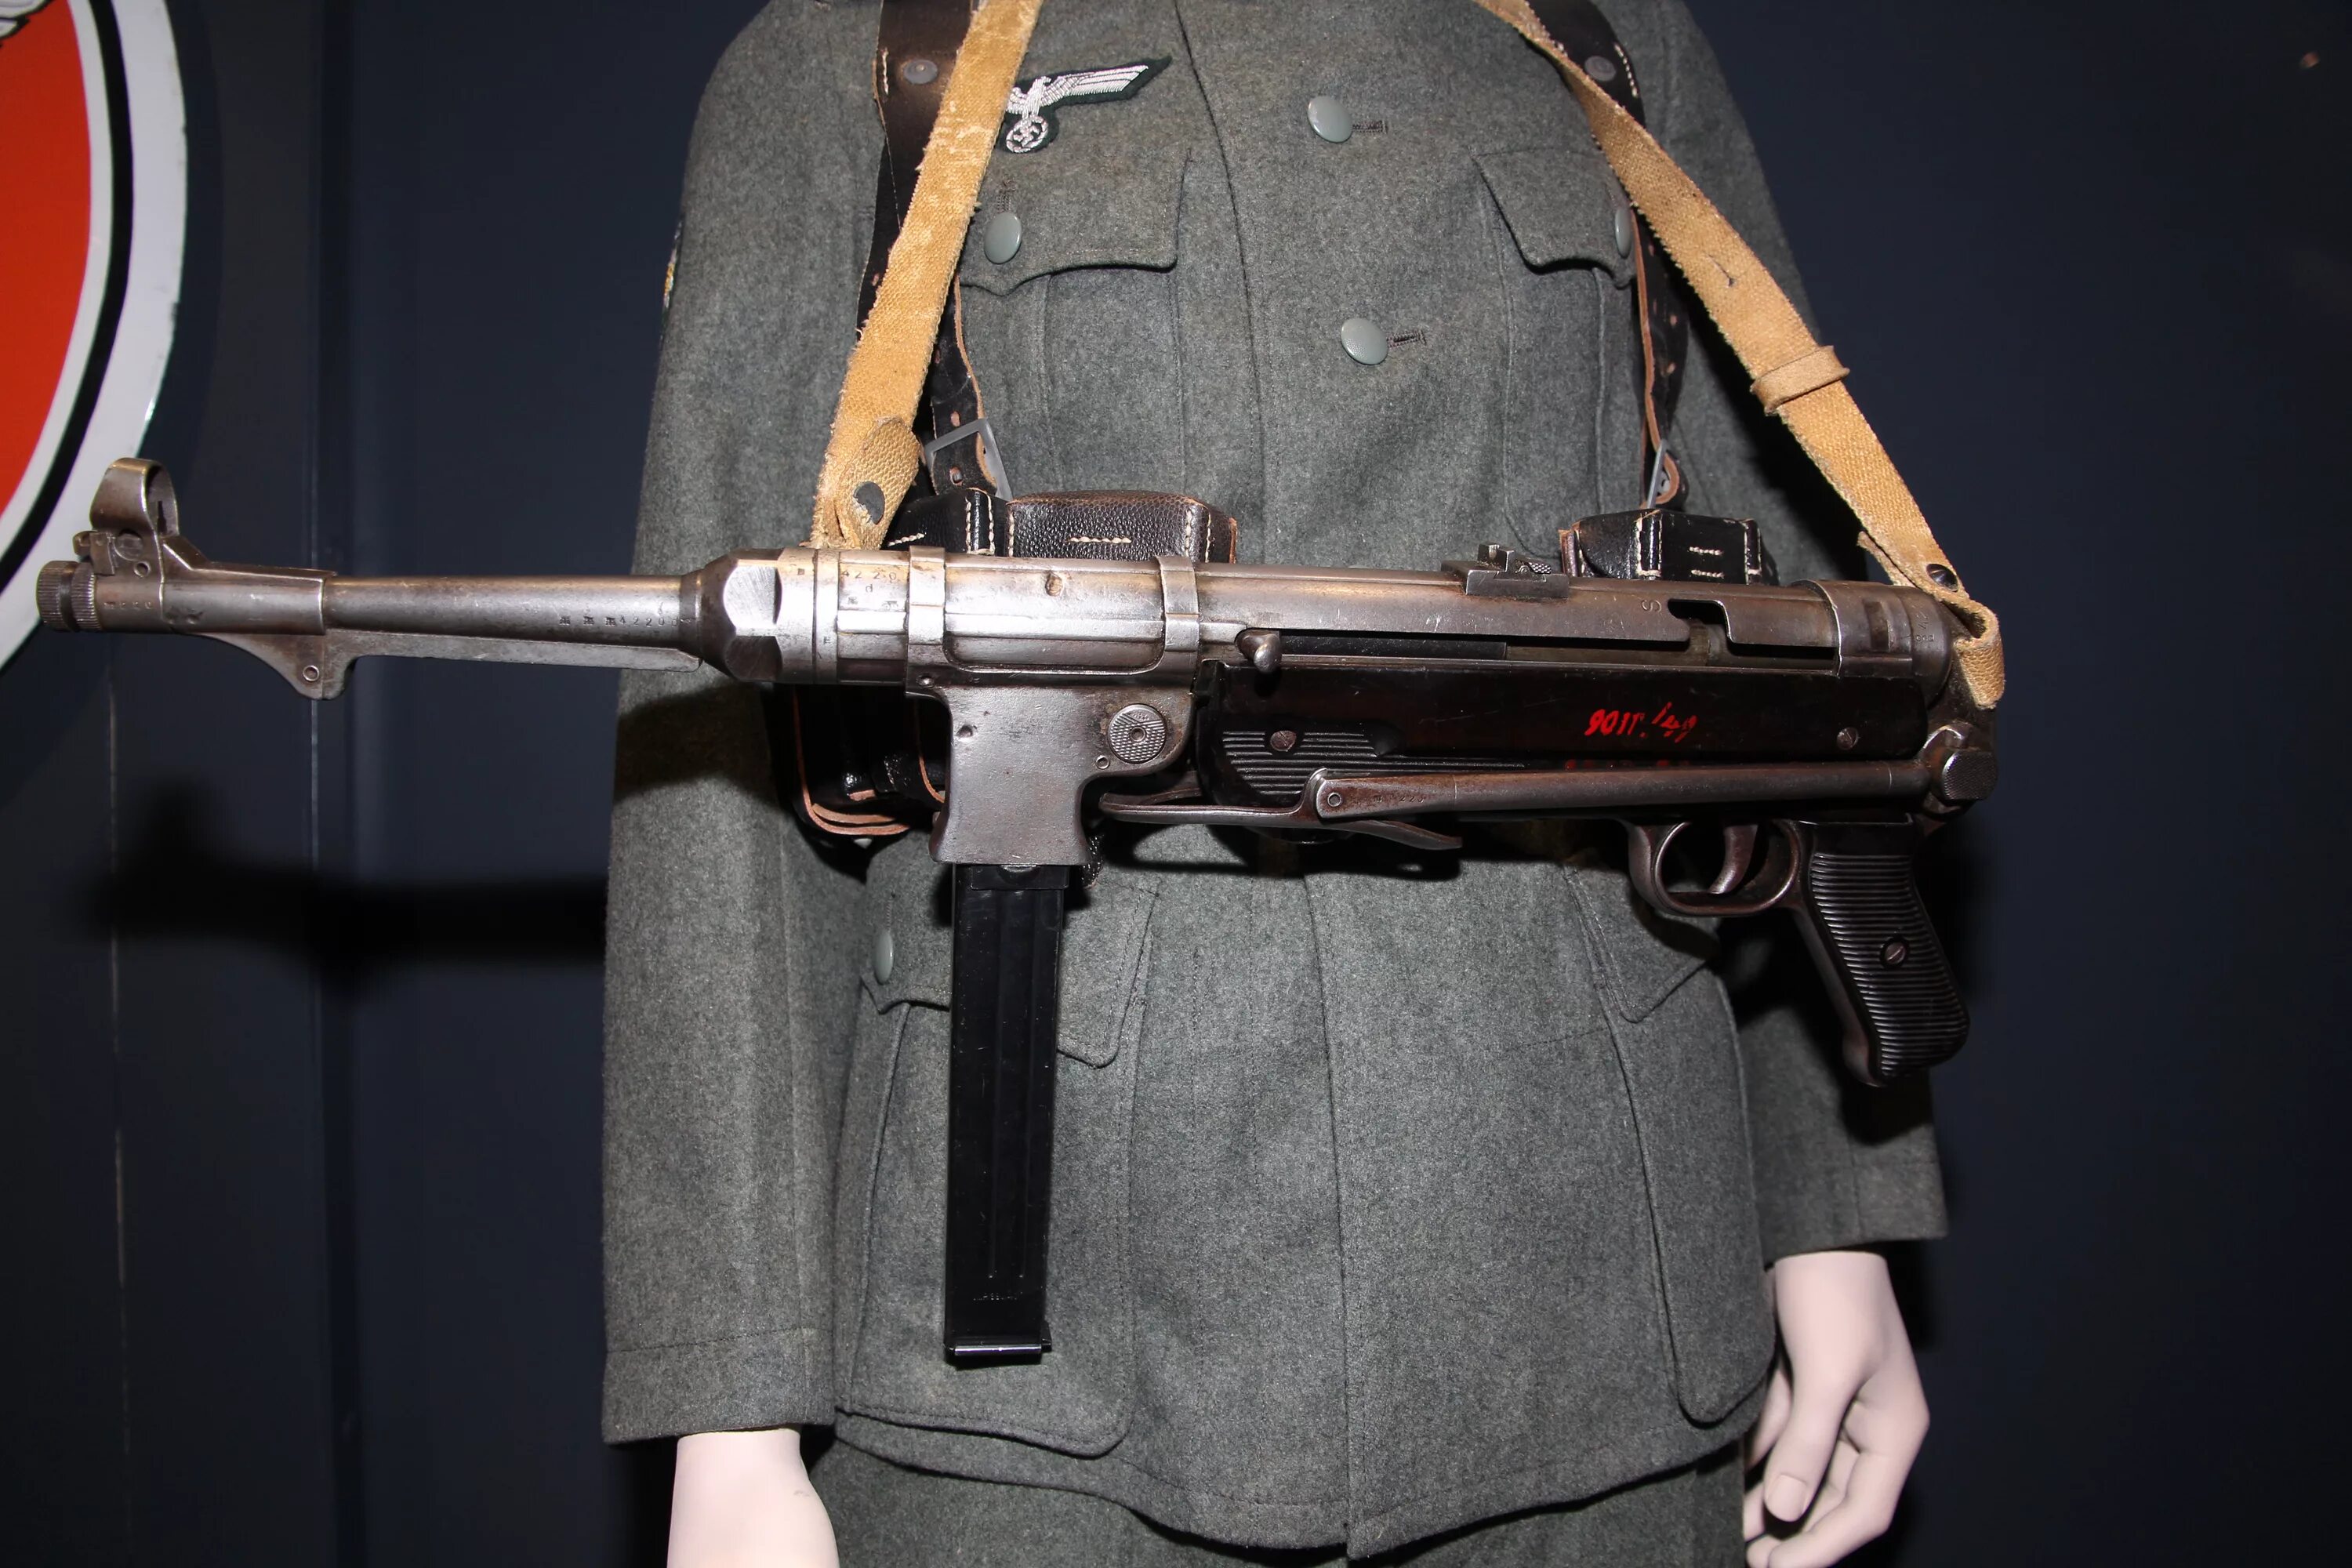 Maschinenpistole 40 (mp40). МП 40 модифицированный. Фашистское оружие